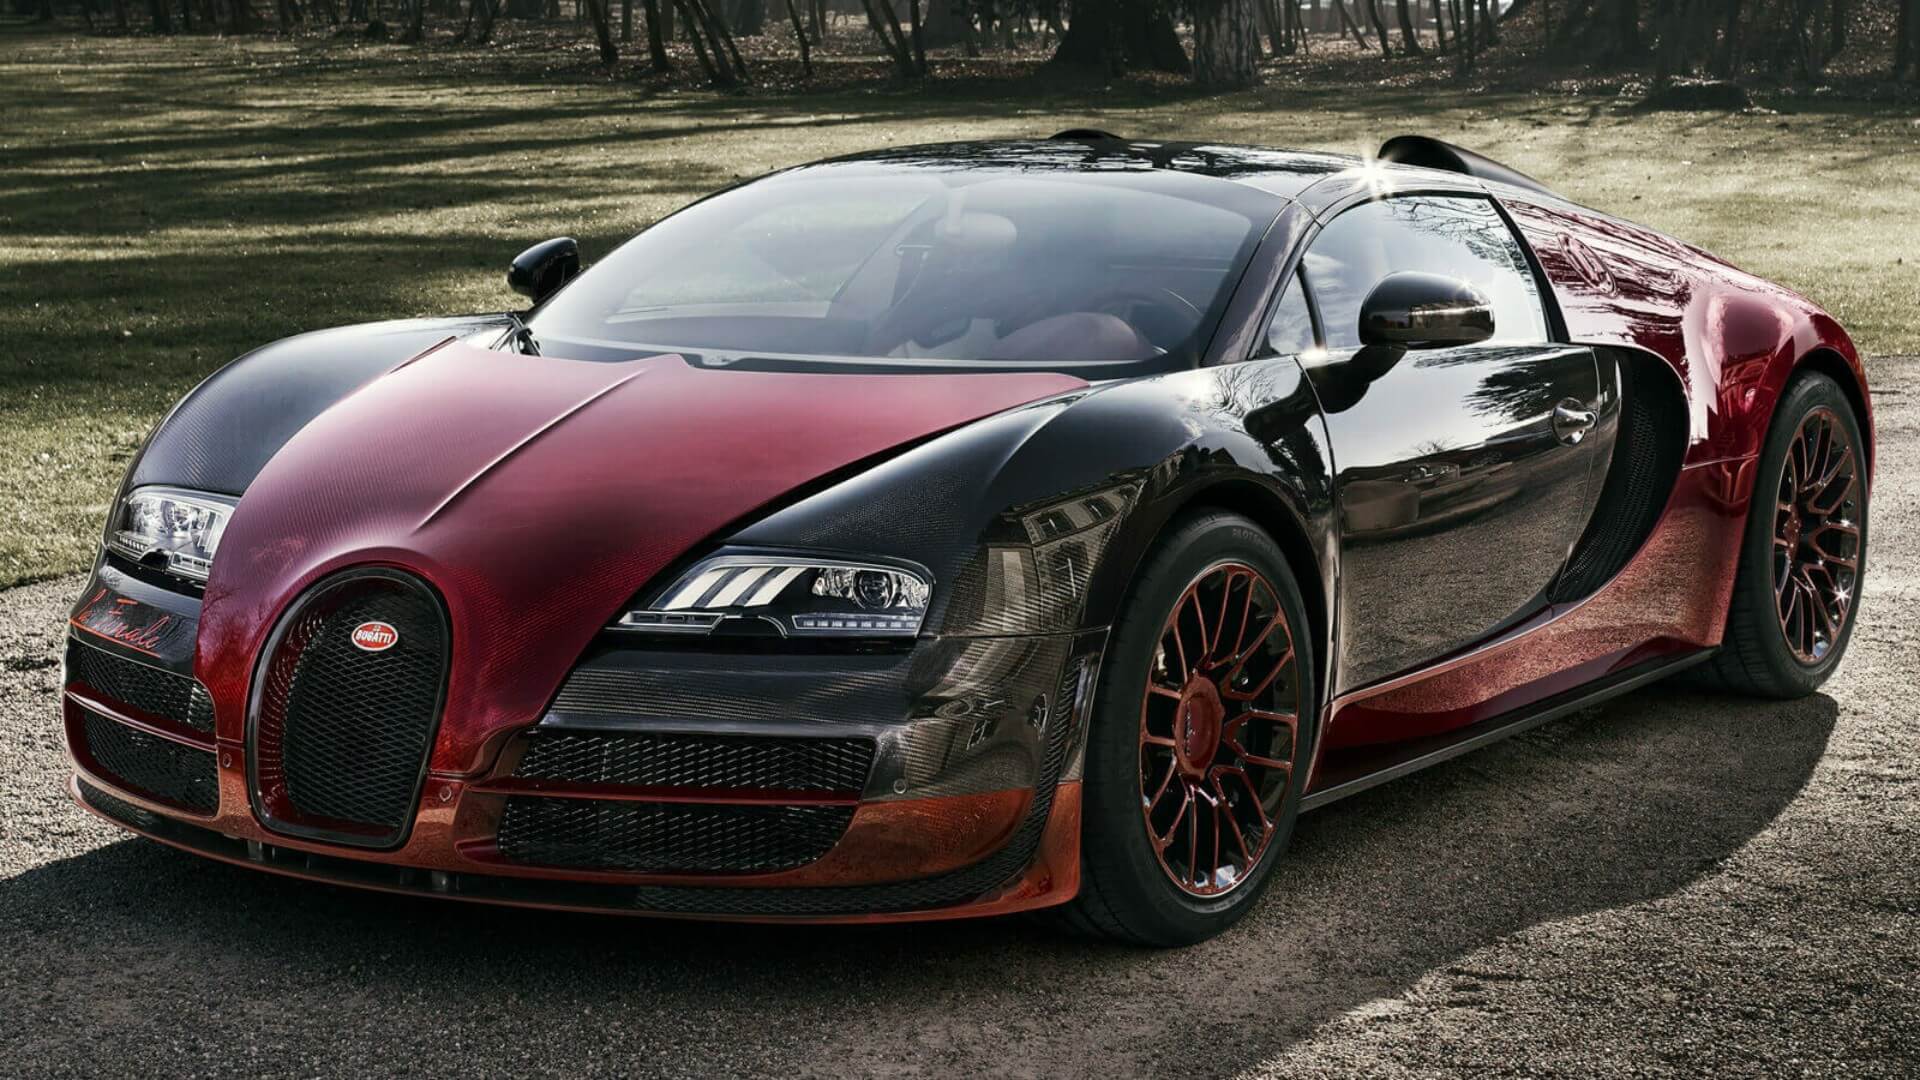 Bugatti Veyron, Бугатти Вейрон, 2005 год выпуска, 1 место, лучшее авто в мире